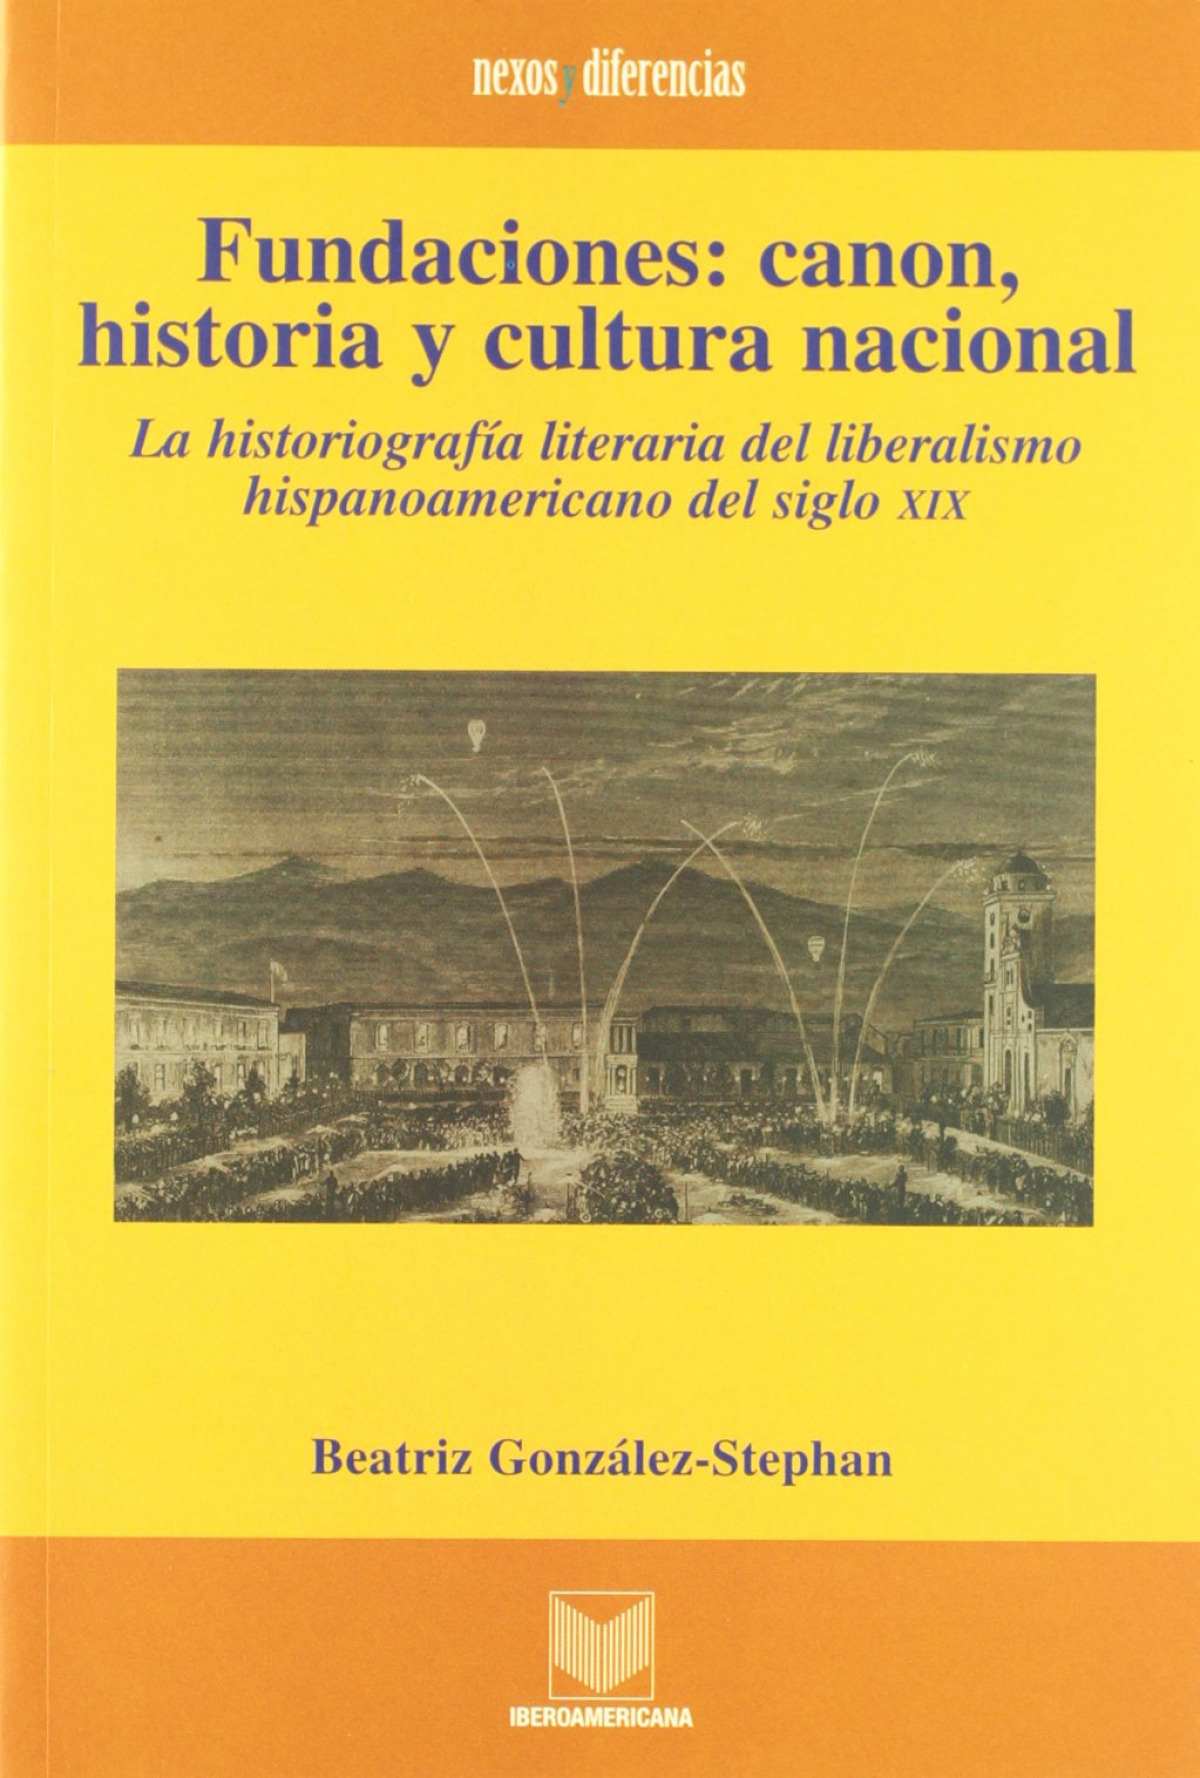 Fundaciones, canon, historia y cultura nacional, la historiografía del liberalismo del siglo XIX